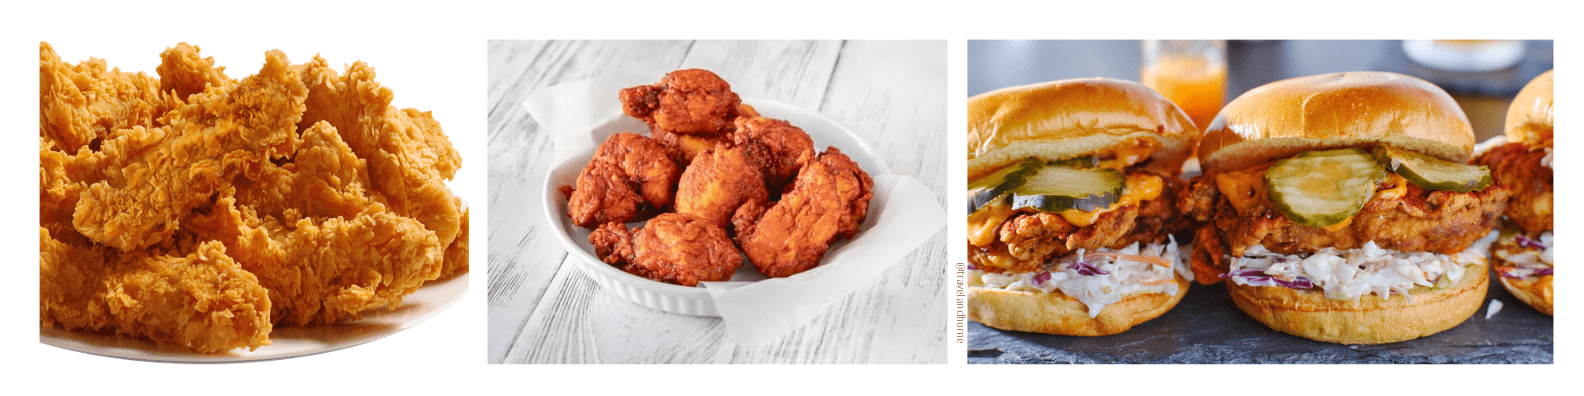 Most popular dishes in Nashville fried chicken hot chicken sandwich min